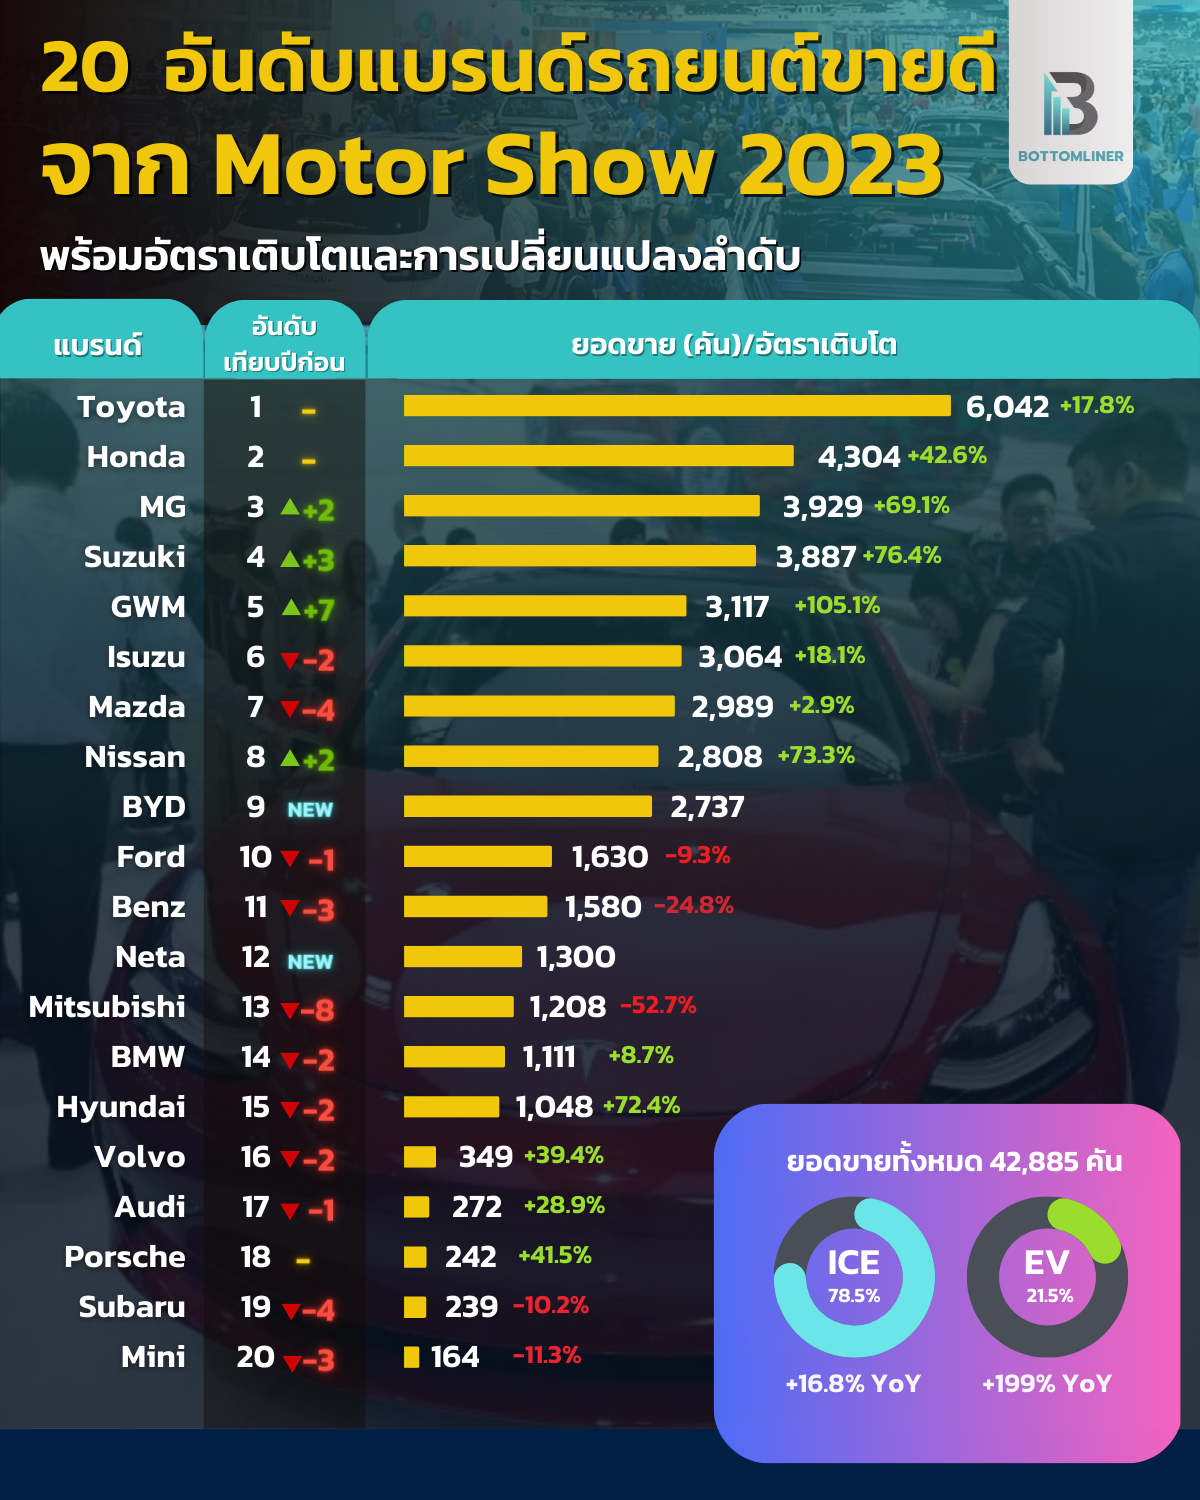 20 อันดับแบรนด์รถยนต์ขายดีจากงาน Motor Show 2023